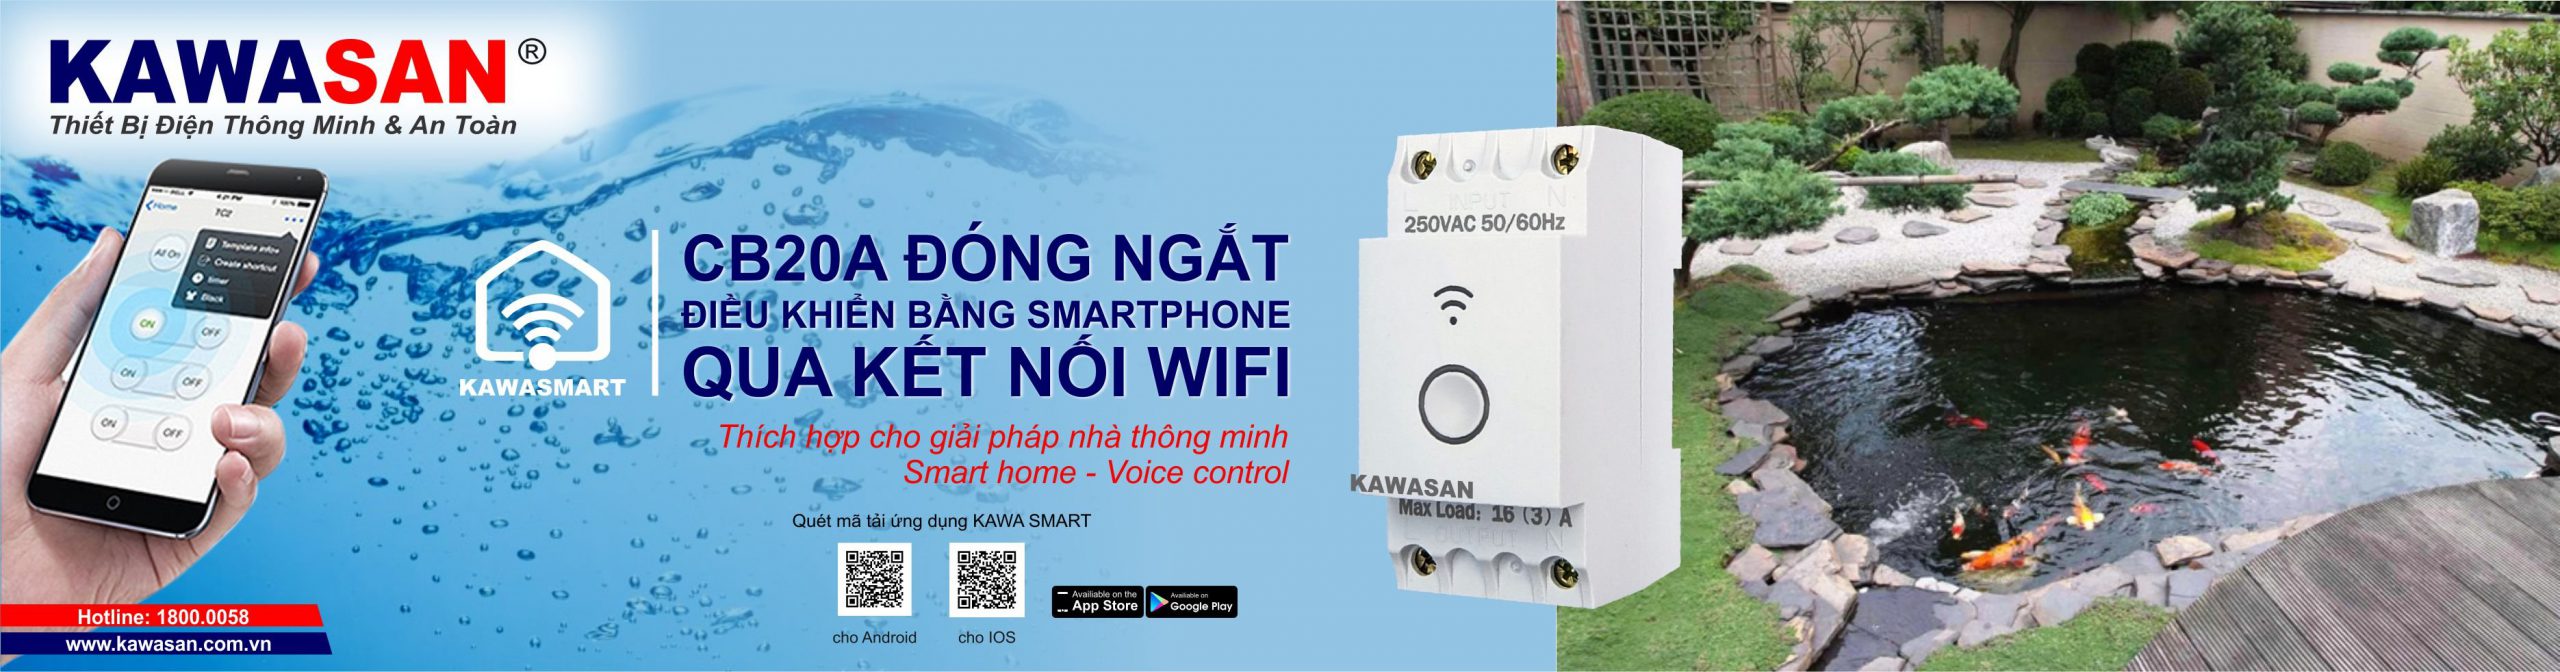 Cong Ta Dien Wifi Cb20a (2)